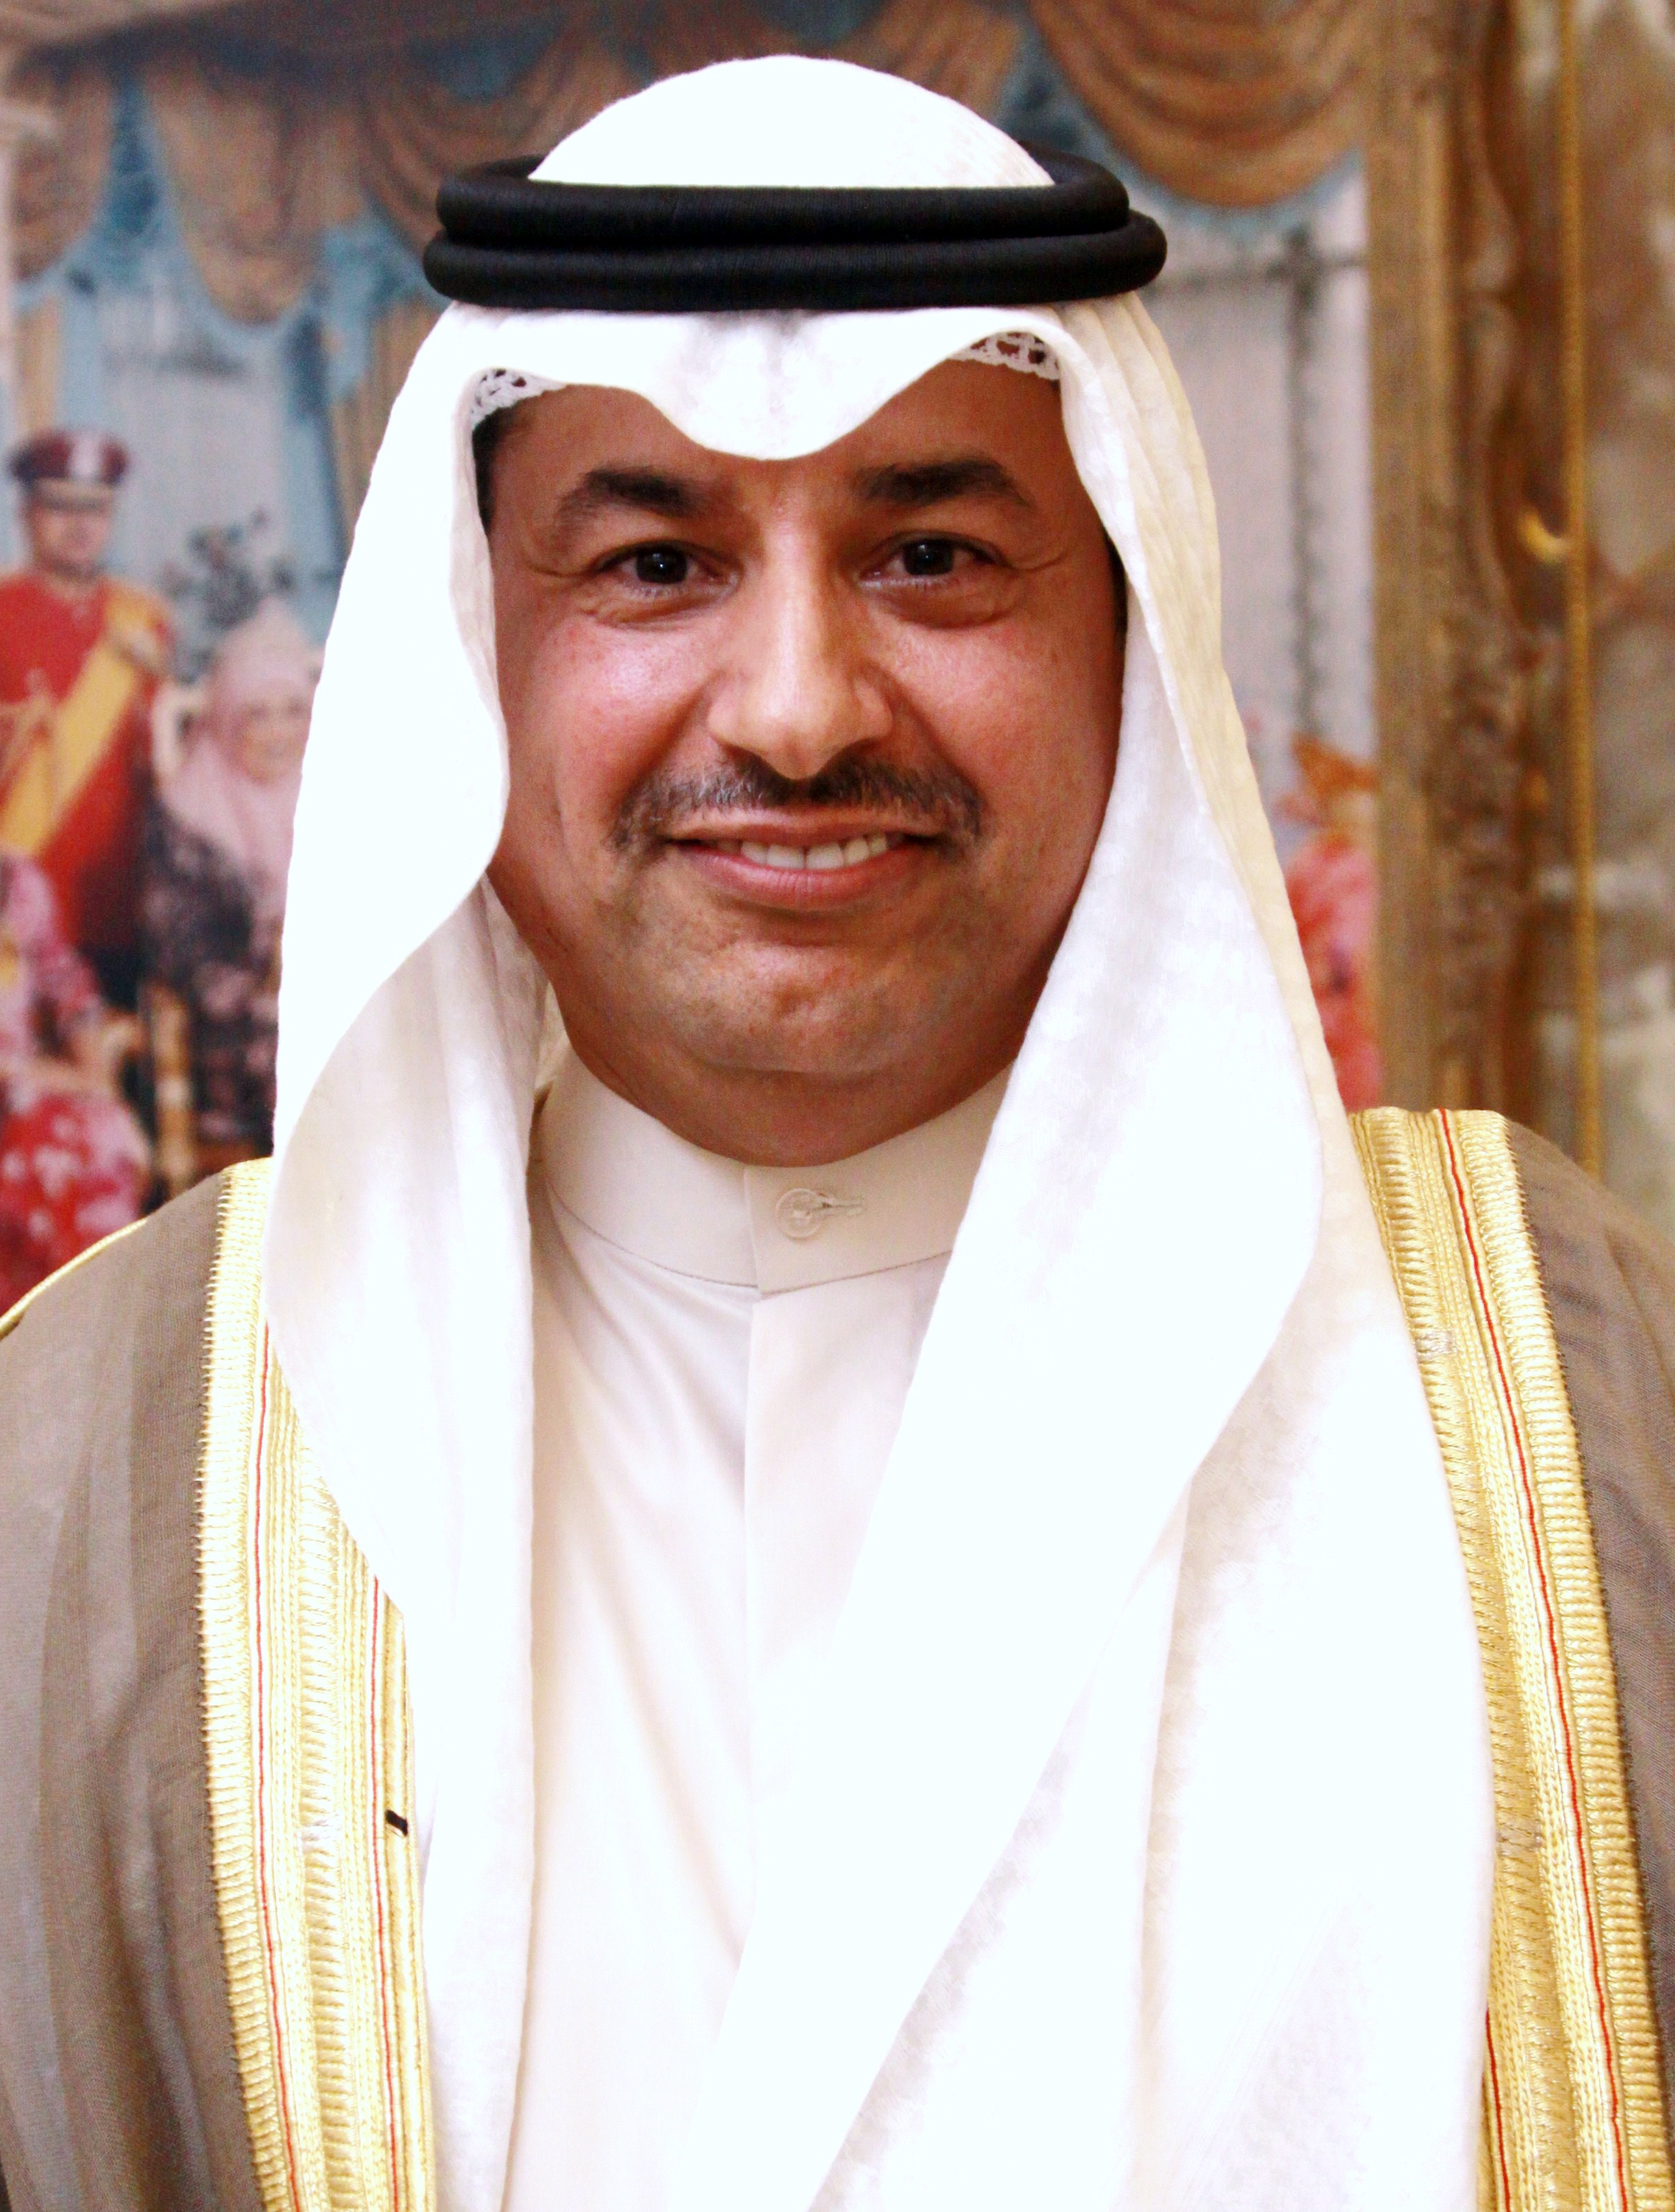 سفير دولة الكويت لدى سلطنة بروناي دار السلام فهد الظفيري